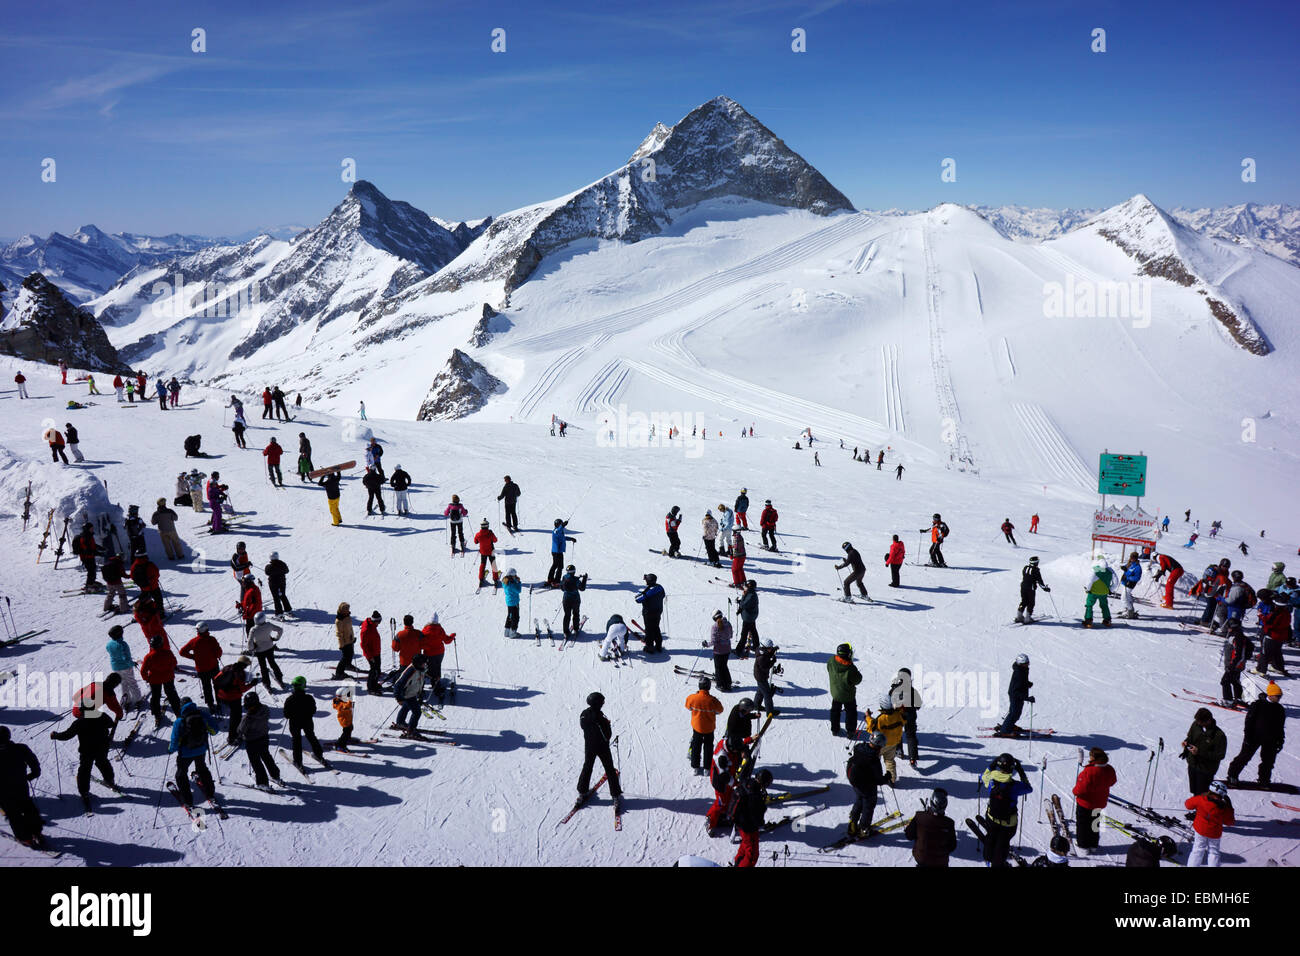 Skiers on Stubai Glacier, with Mtns. Stubaier Wildspitze (3340m) and Daunkogel (3330 m), Tyrol, Austria Stock Photo